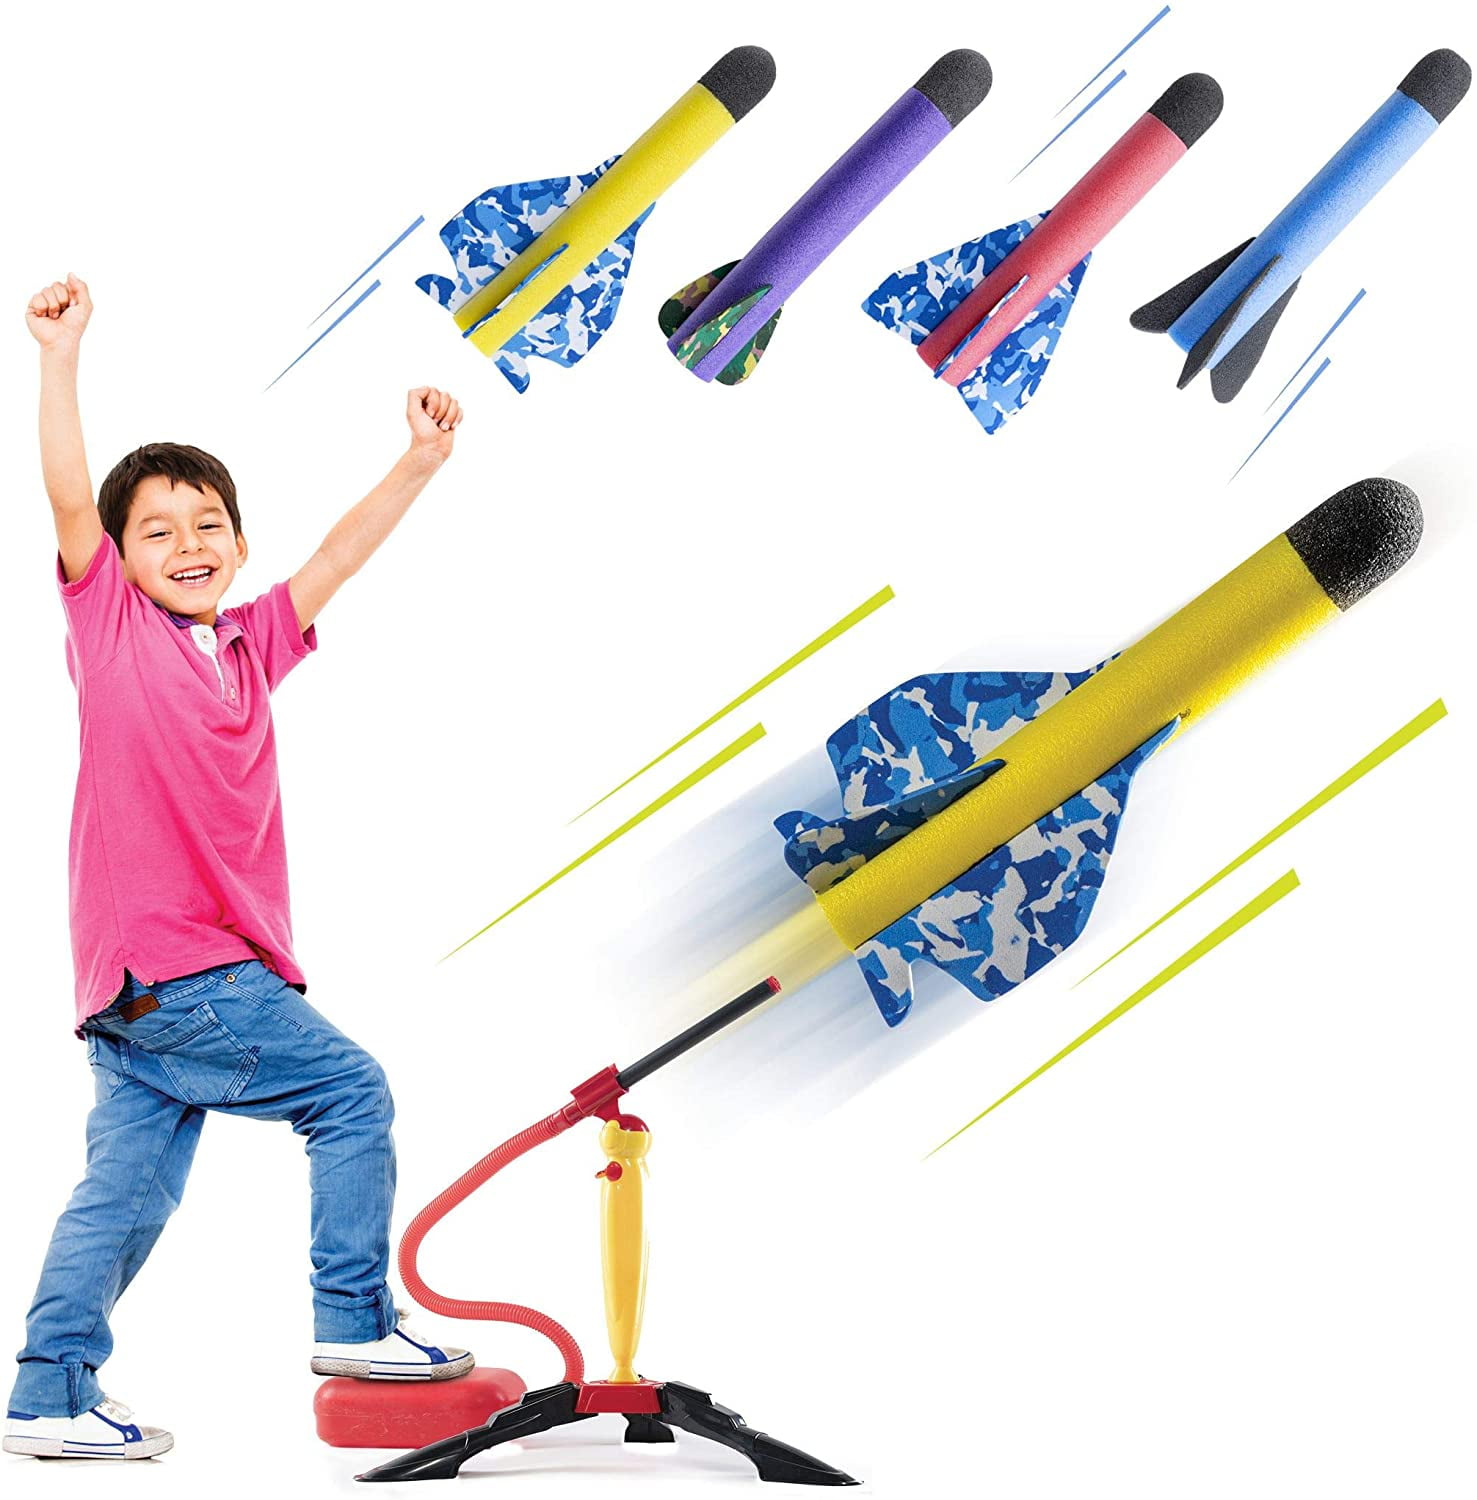 Rocket Toy with 3 Foam Rockets Kids Outdoor Toy Rocket Launcher Stomp Rocket 